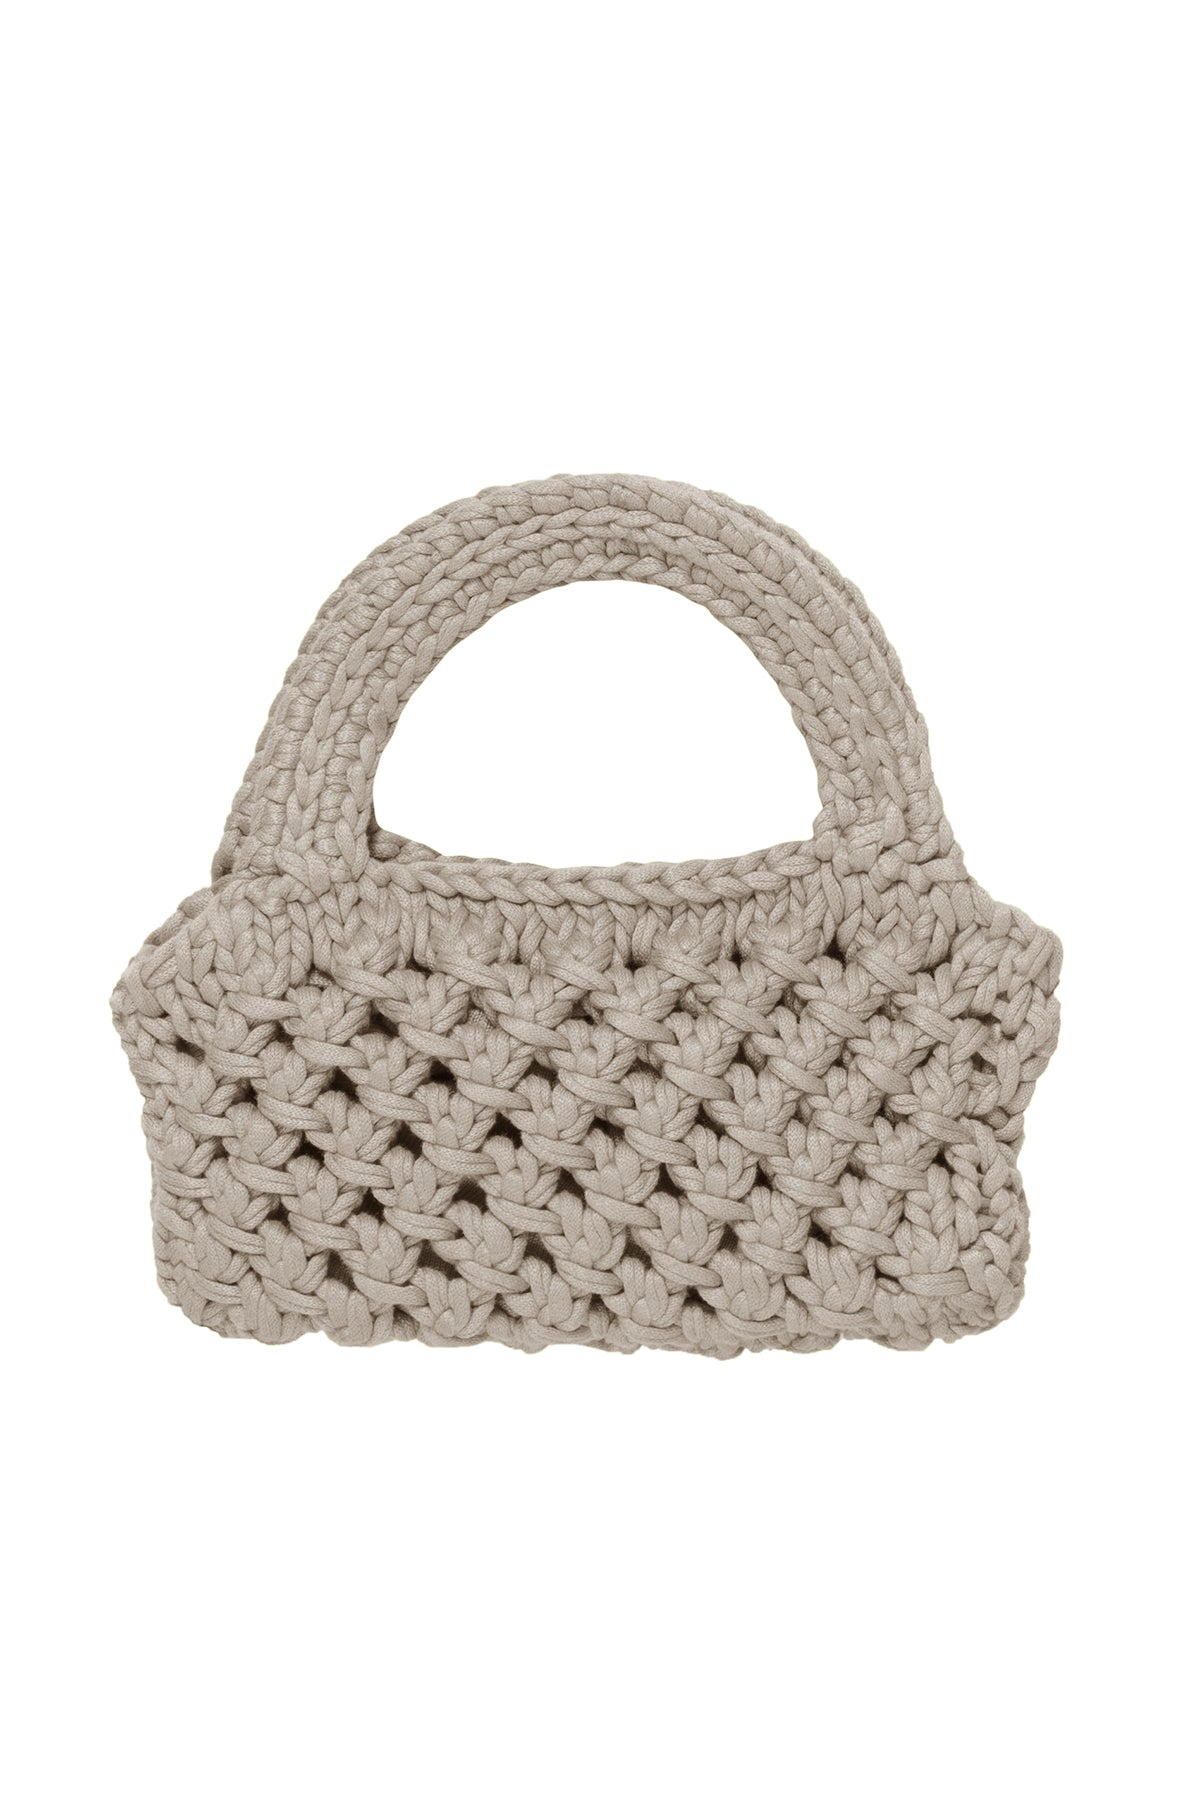   Bennie Crochet Bag in Putty 